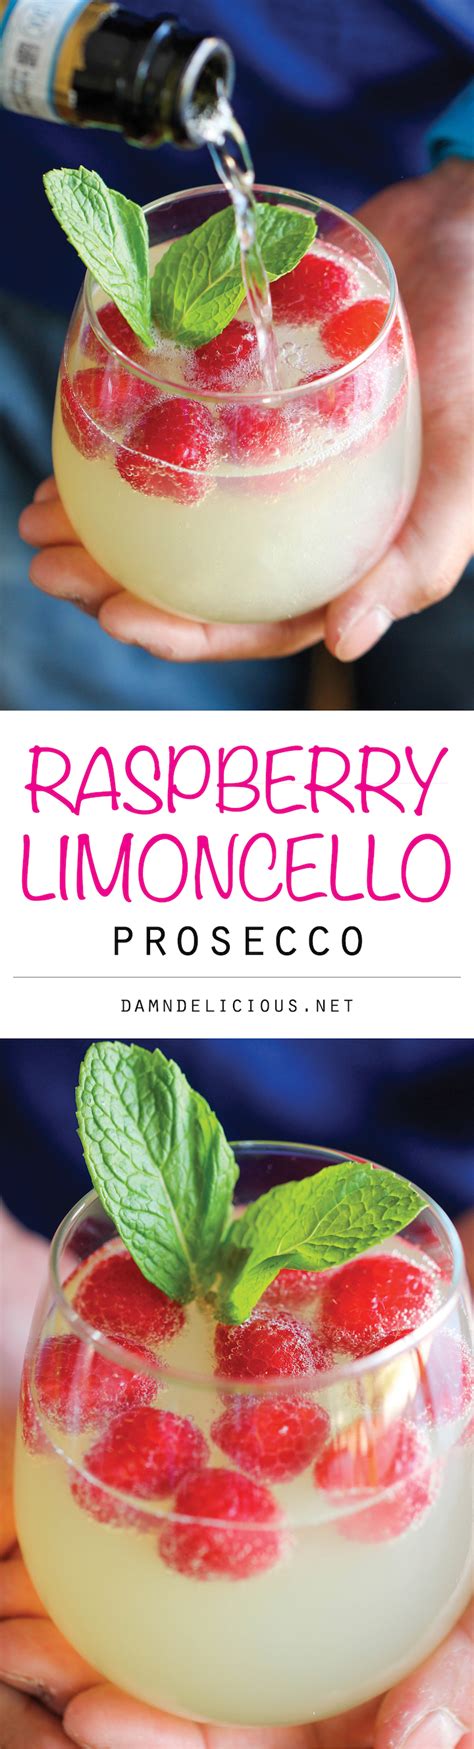 Raspberry Limoncello Prosecco Damn Delicious